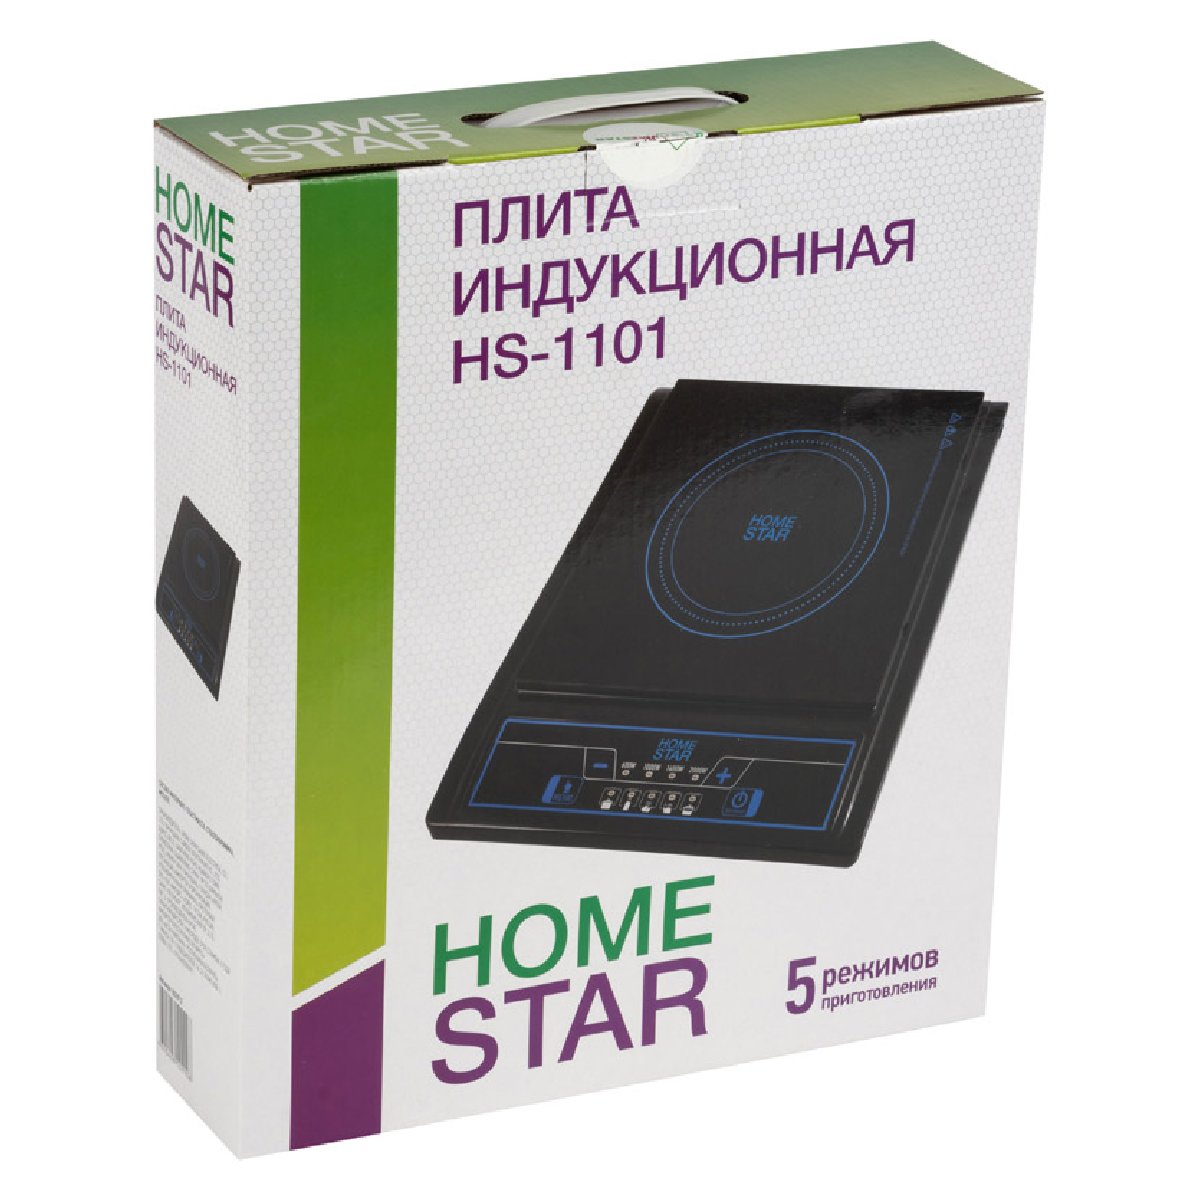 Электроплитка Homestar HS-1101 1-но конфорочная, индукционная плита, 2кВт, стеклокерамическая (002912)